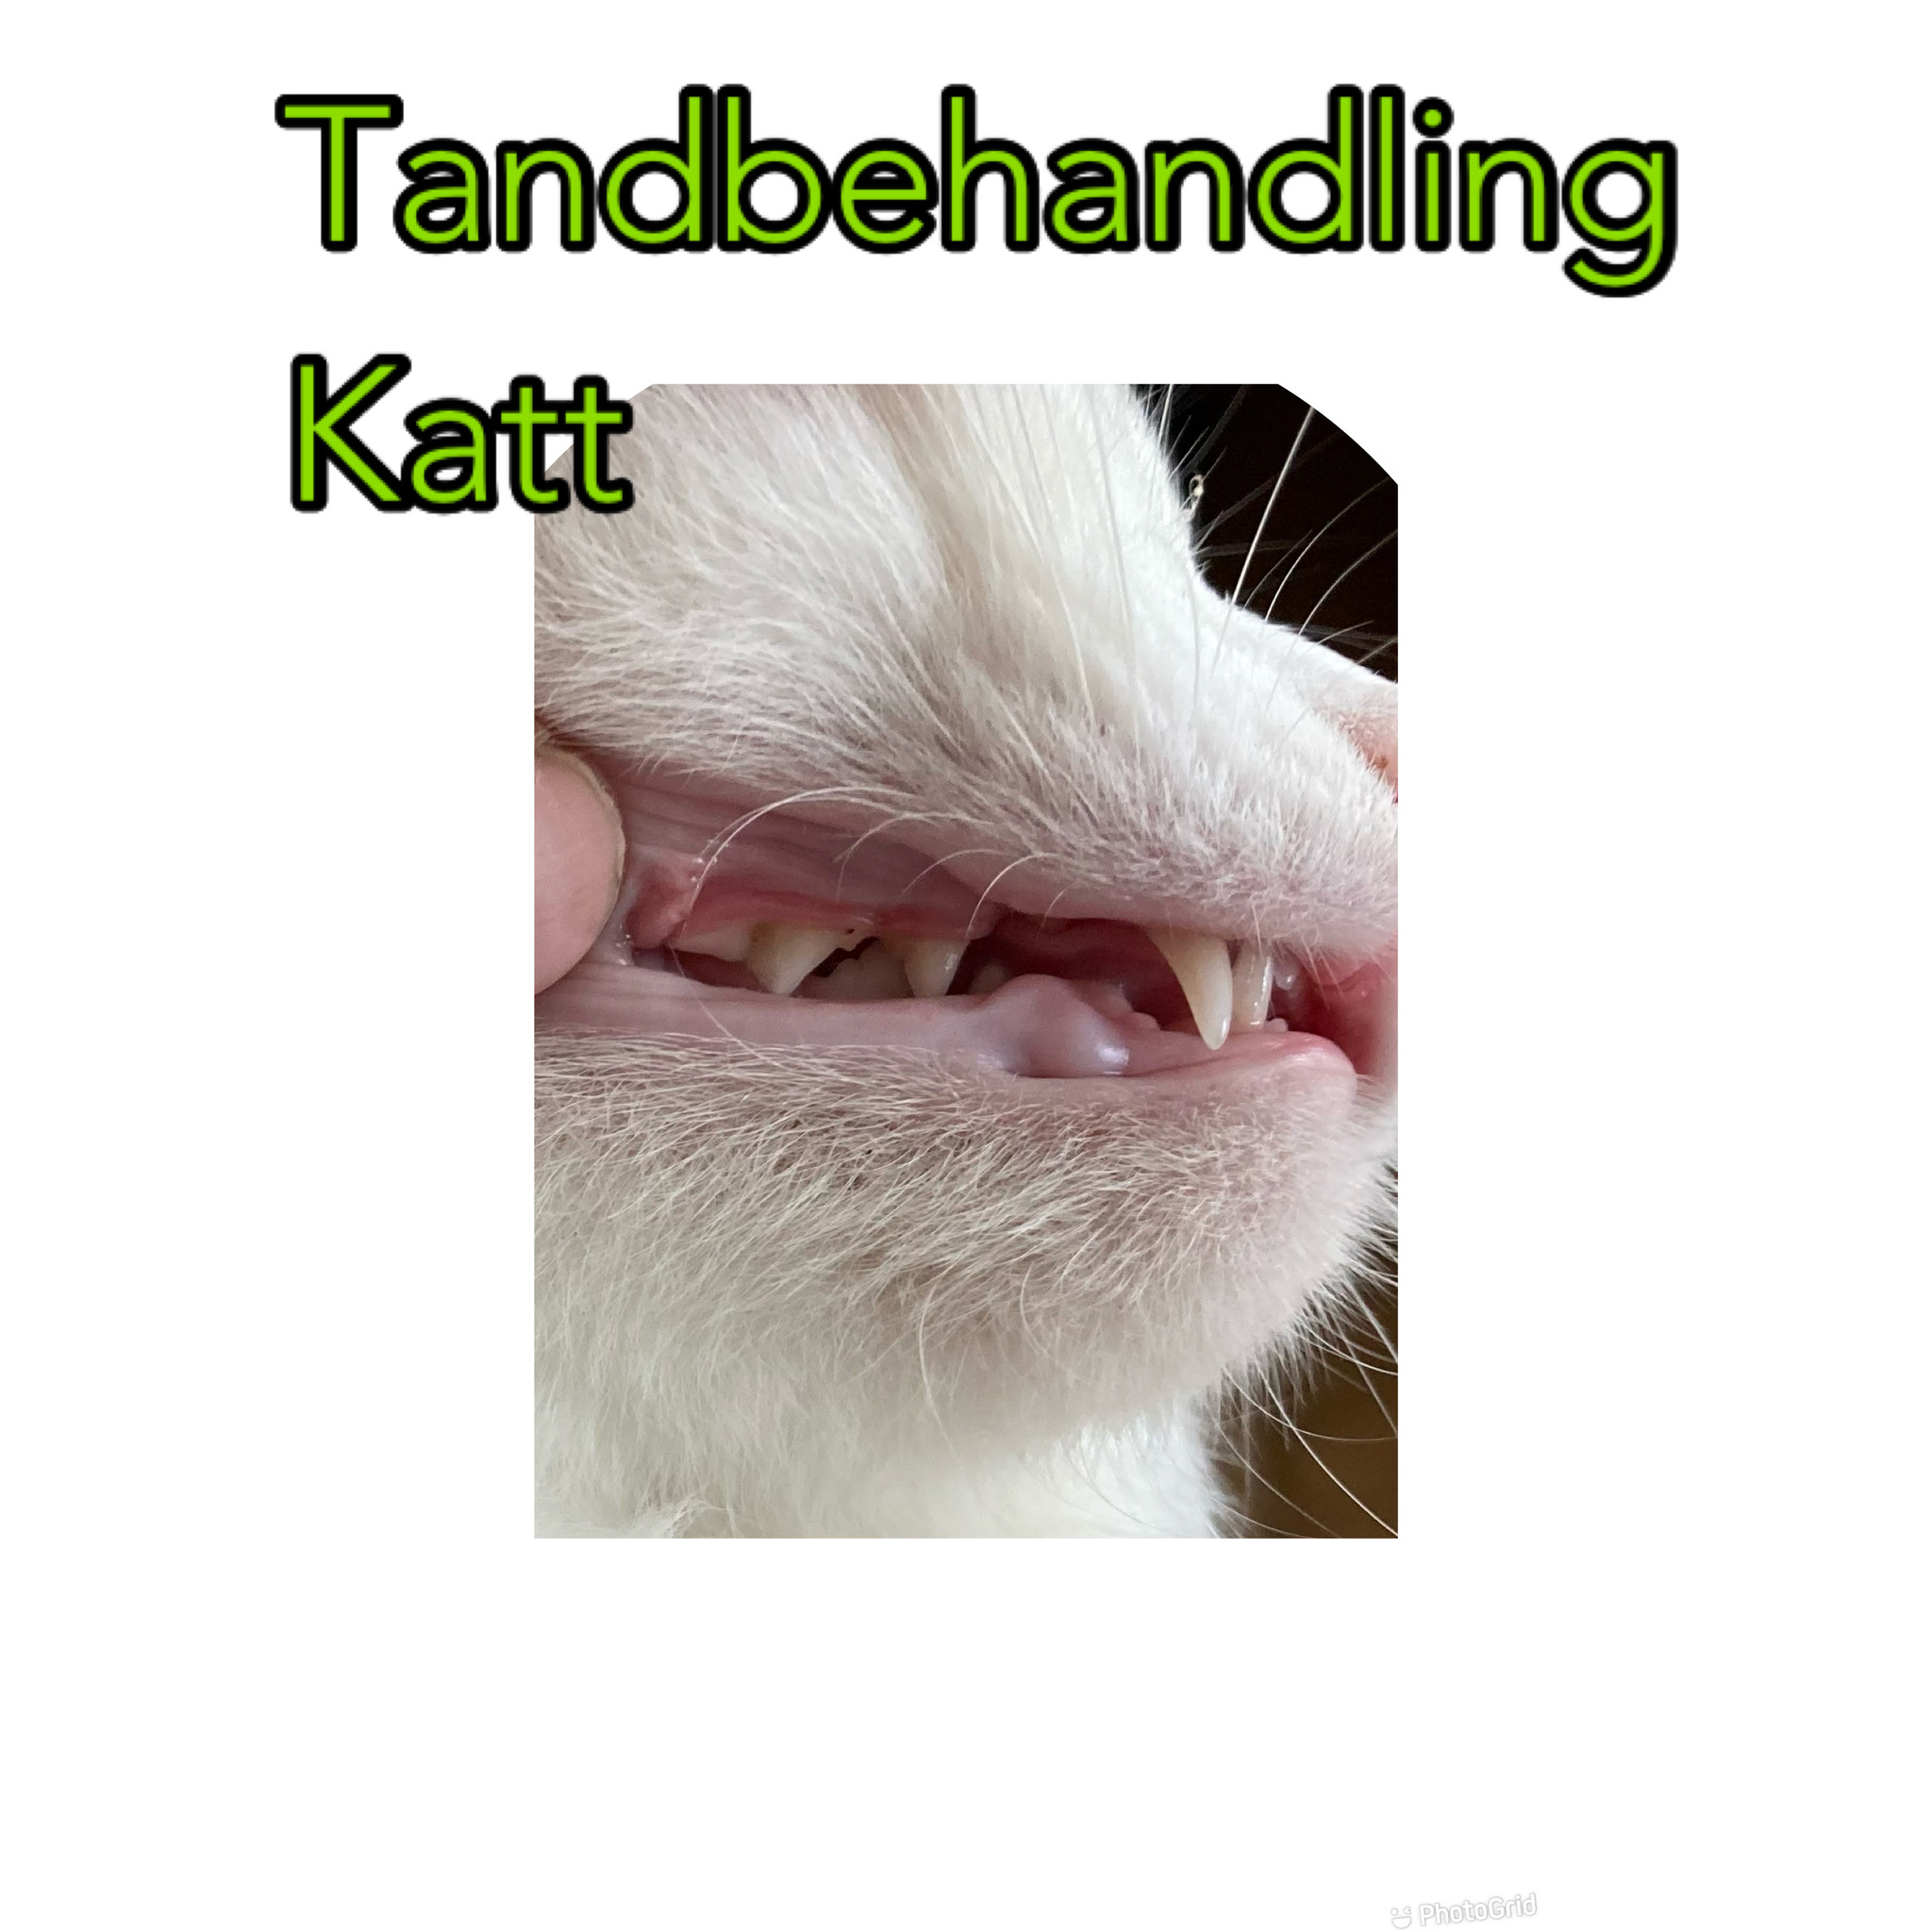 Tandbehandling Katt Underhåll